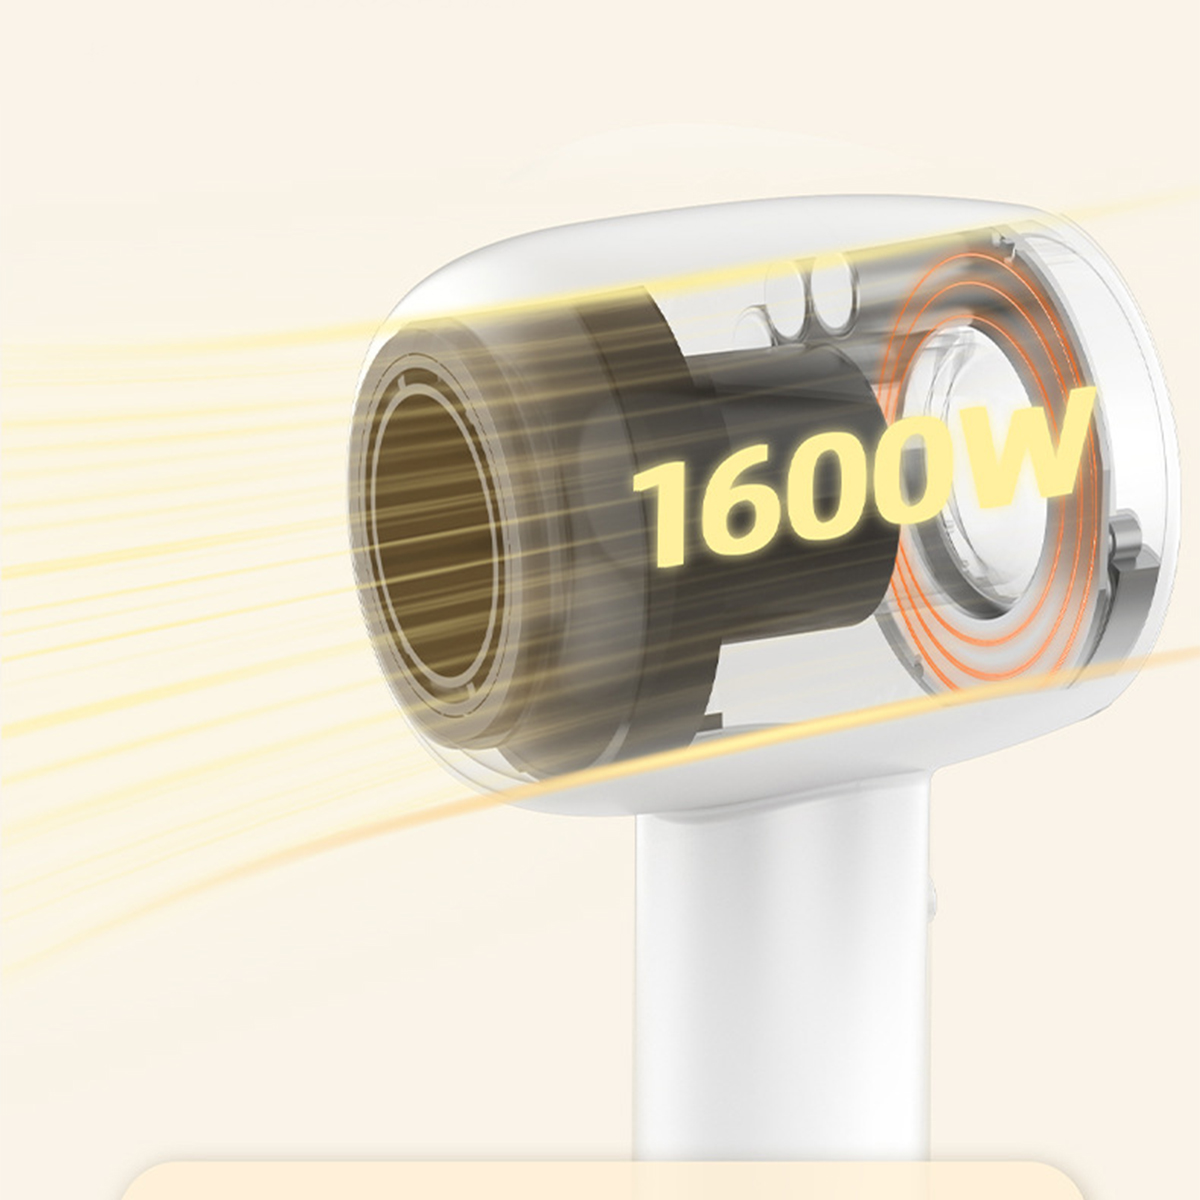 SHAOKE Leistungsstarker Haartrockner mit leisem Ionic Weiß,Gold 1600W (1600 Watt) Haartrockner Schnelltrocknung Betrieb